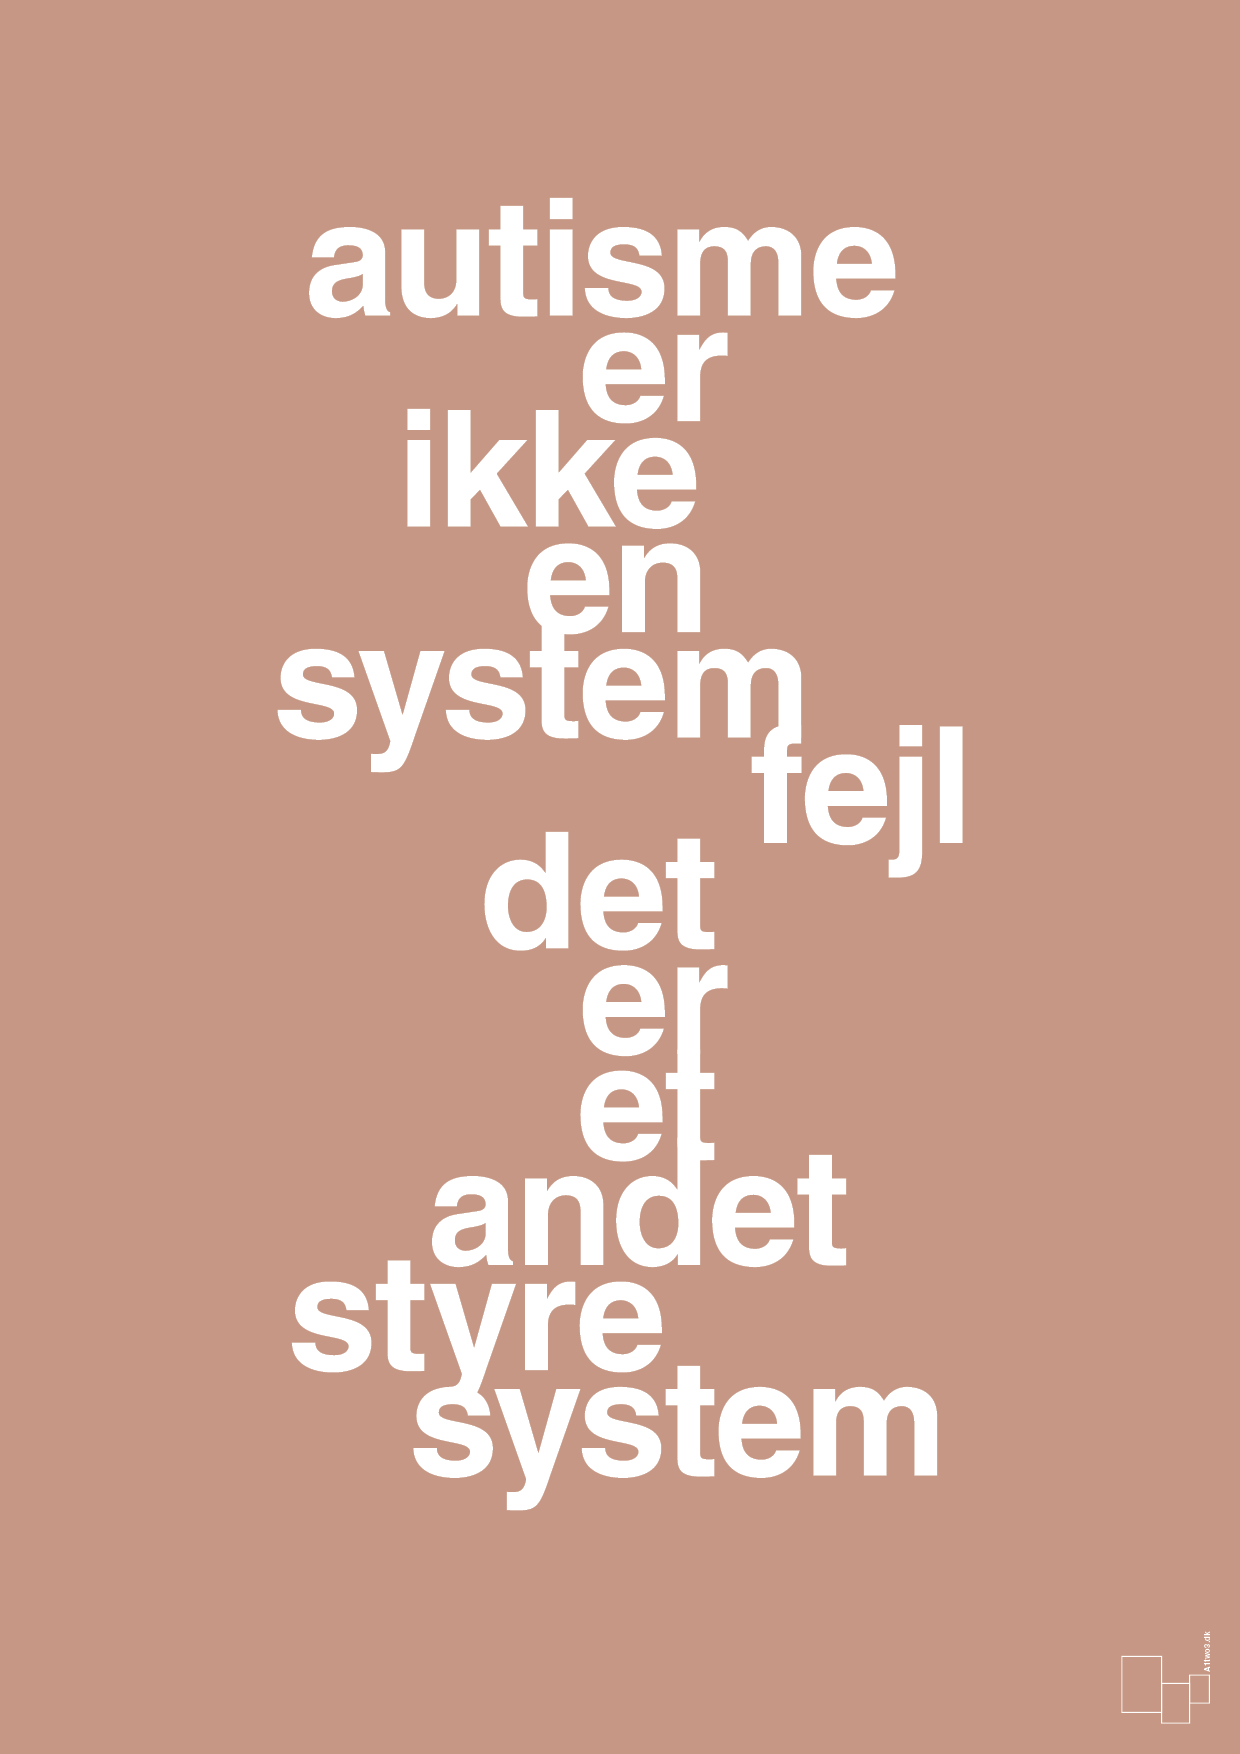 autisme er ikke en systemfejl - Plakat med Samfund i Powder